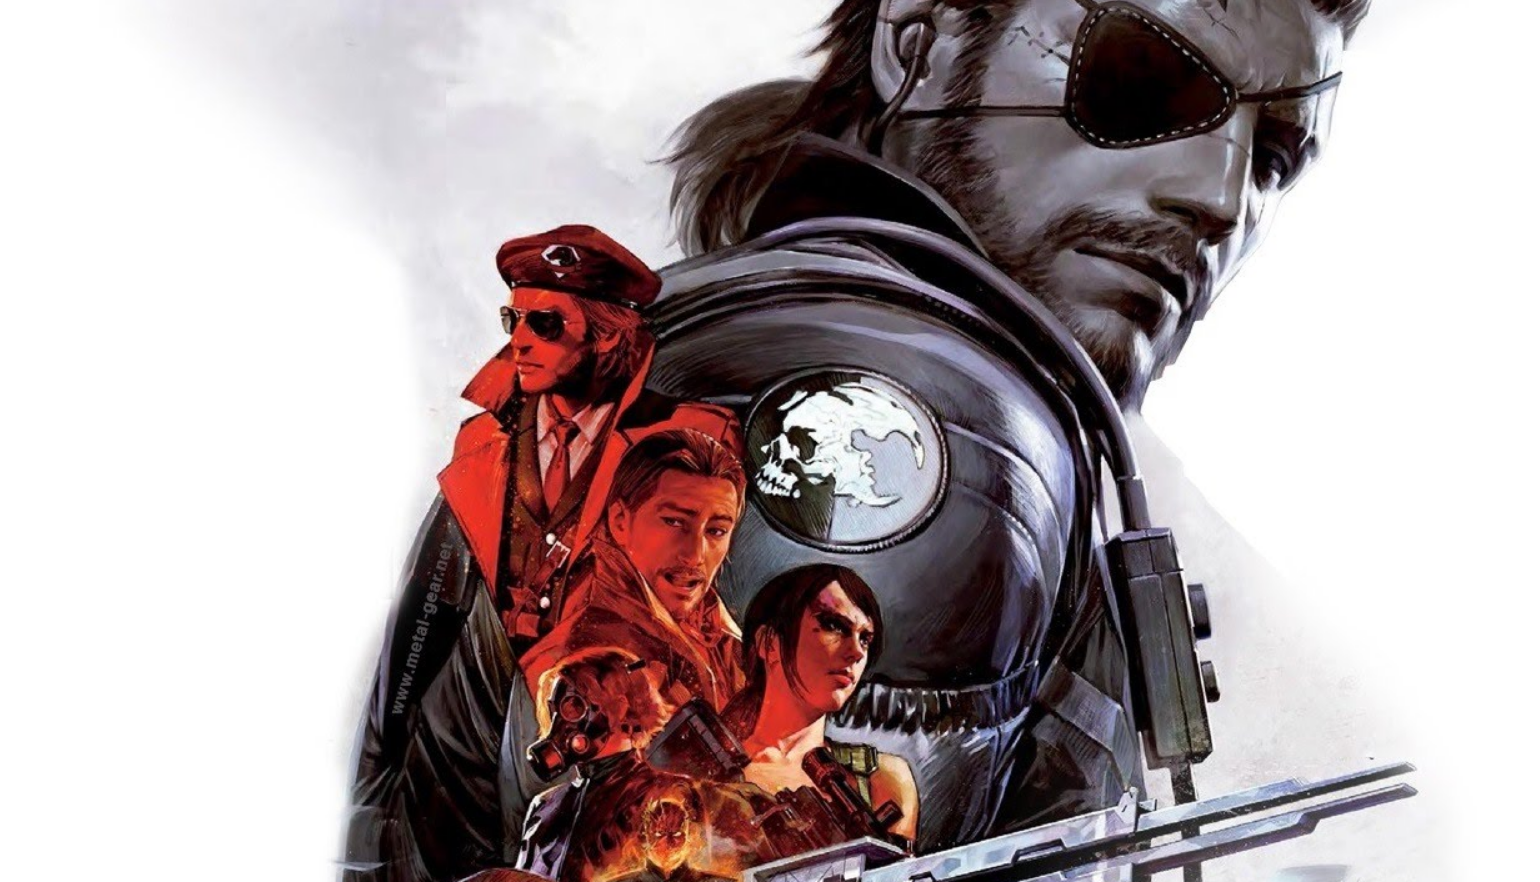 Plotka: Sony szykuje remake pierwszego Metal Gear i Castlevania w stylu Bloodborne do PlayStation 5